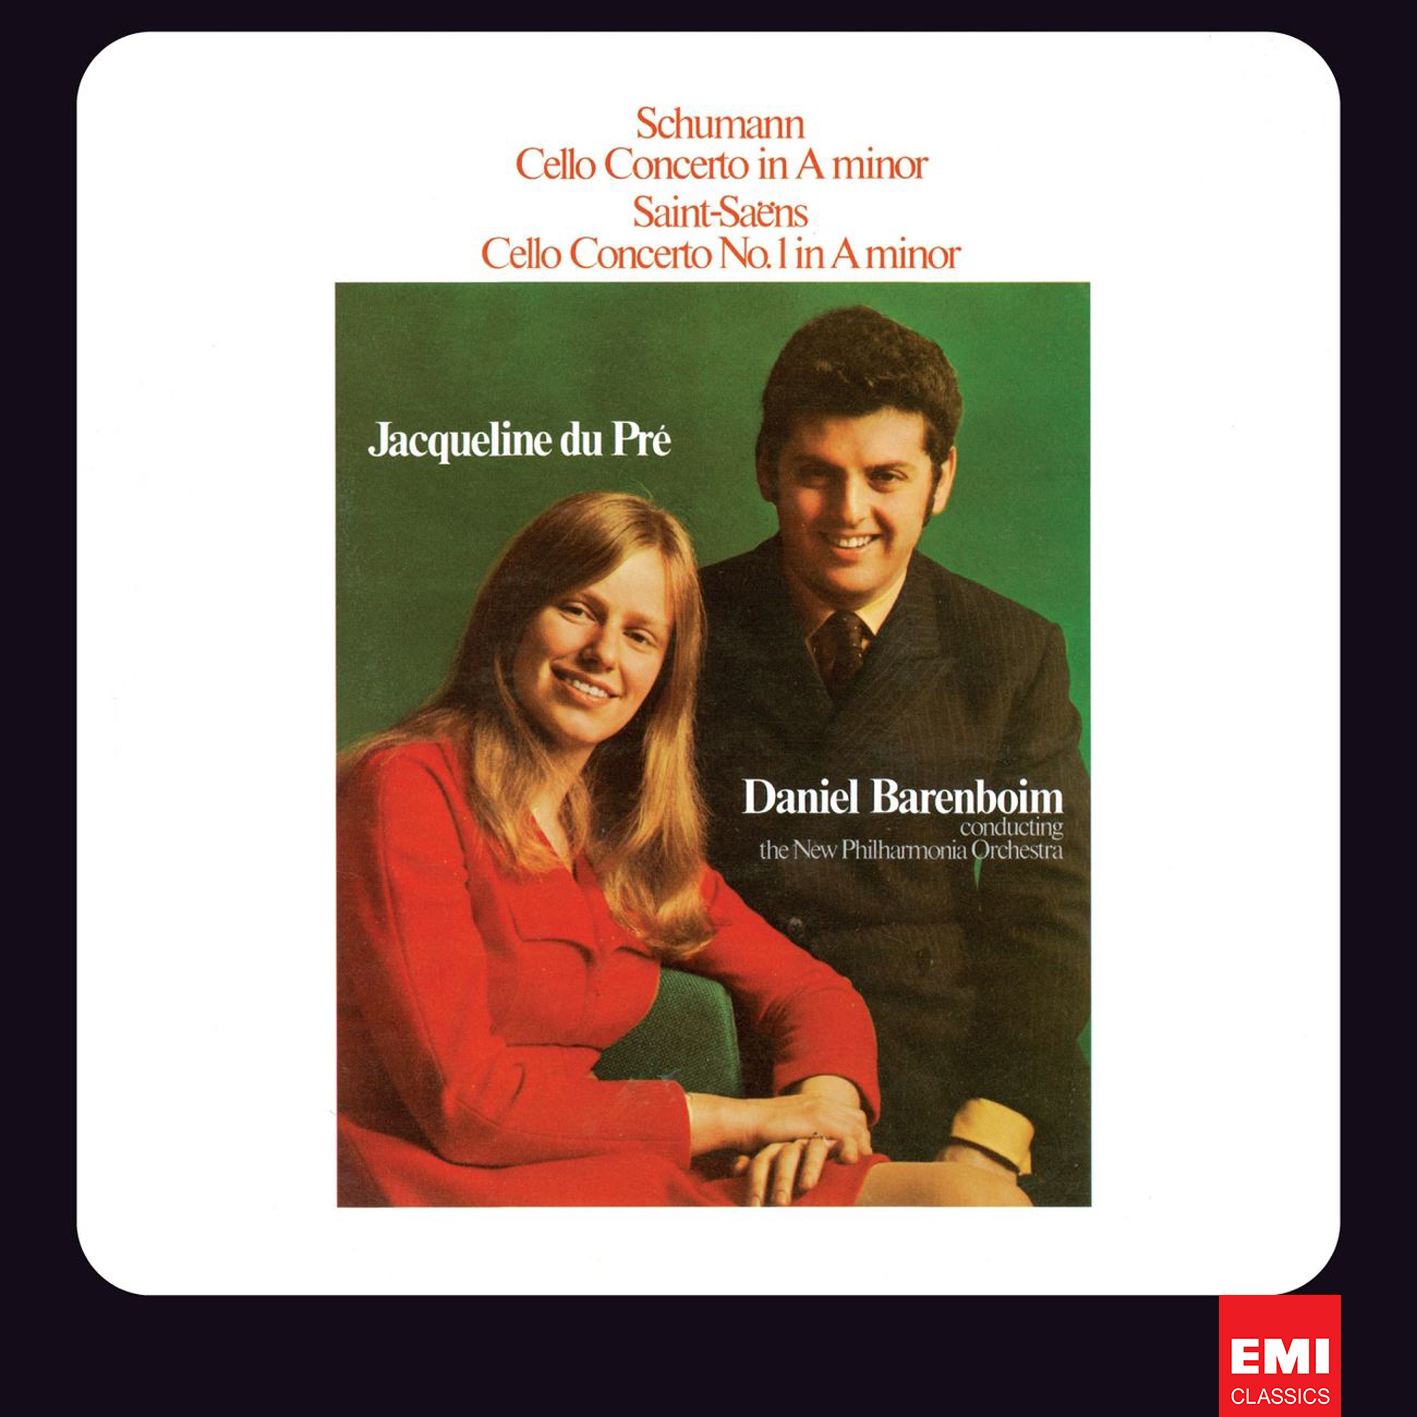 Jacqueline du Pre, Daniel Barenboim - Schumann, Saint-Saens: Cello Concertos (1969/2012) [HDTracks FLAC 24bit/96kHz]